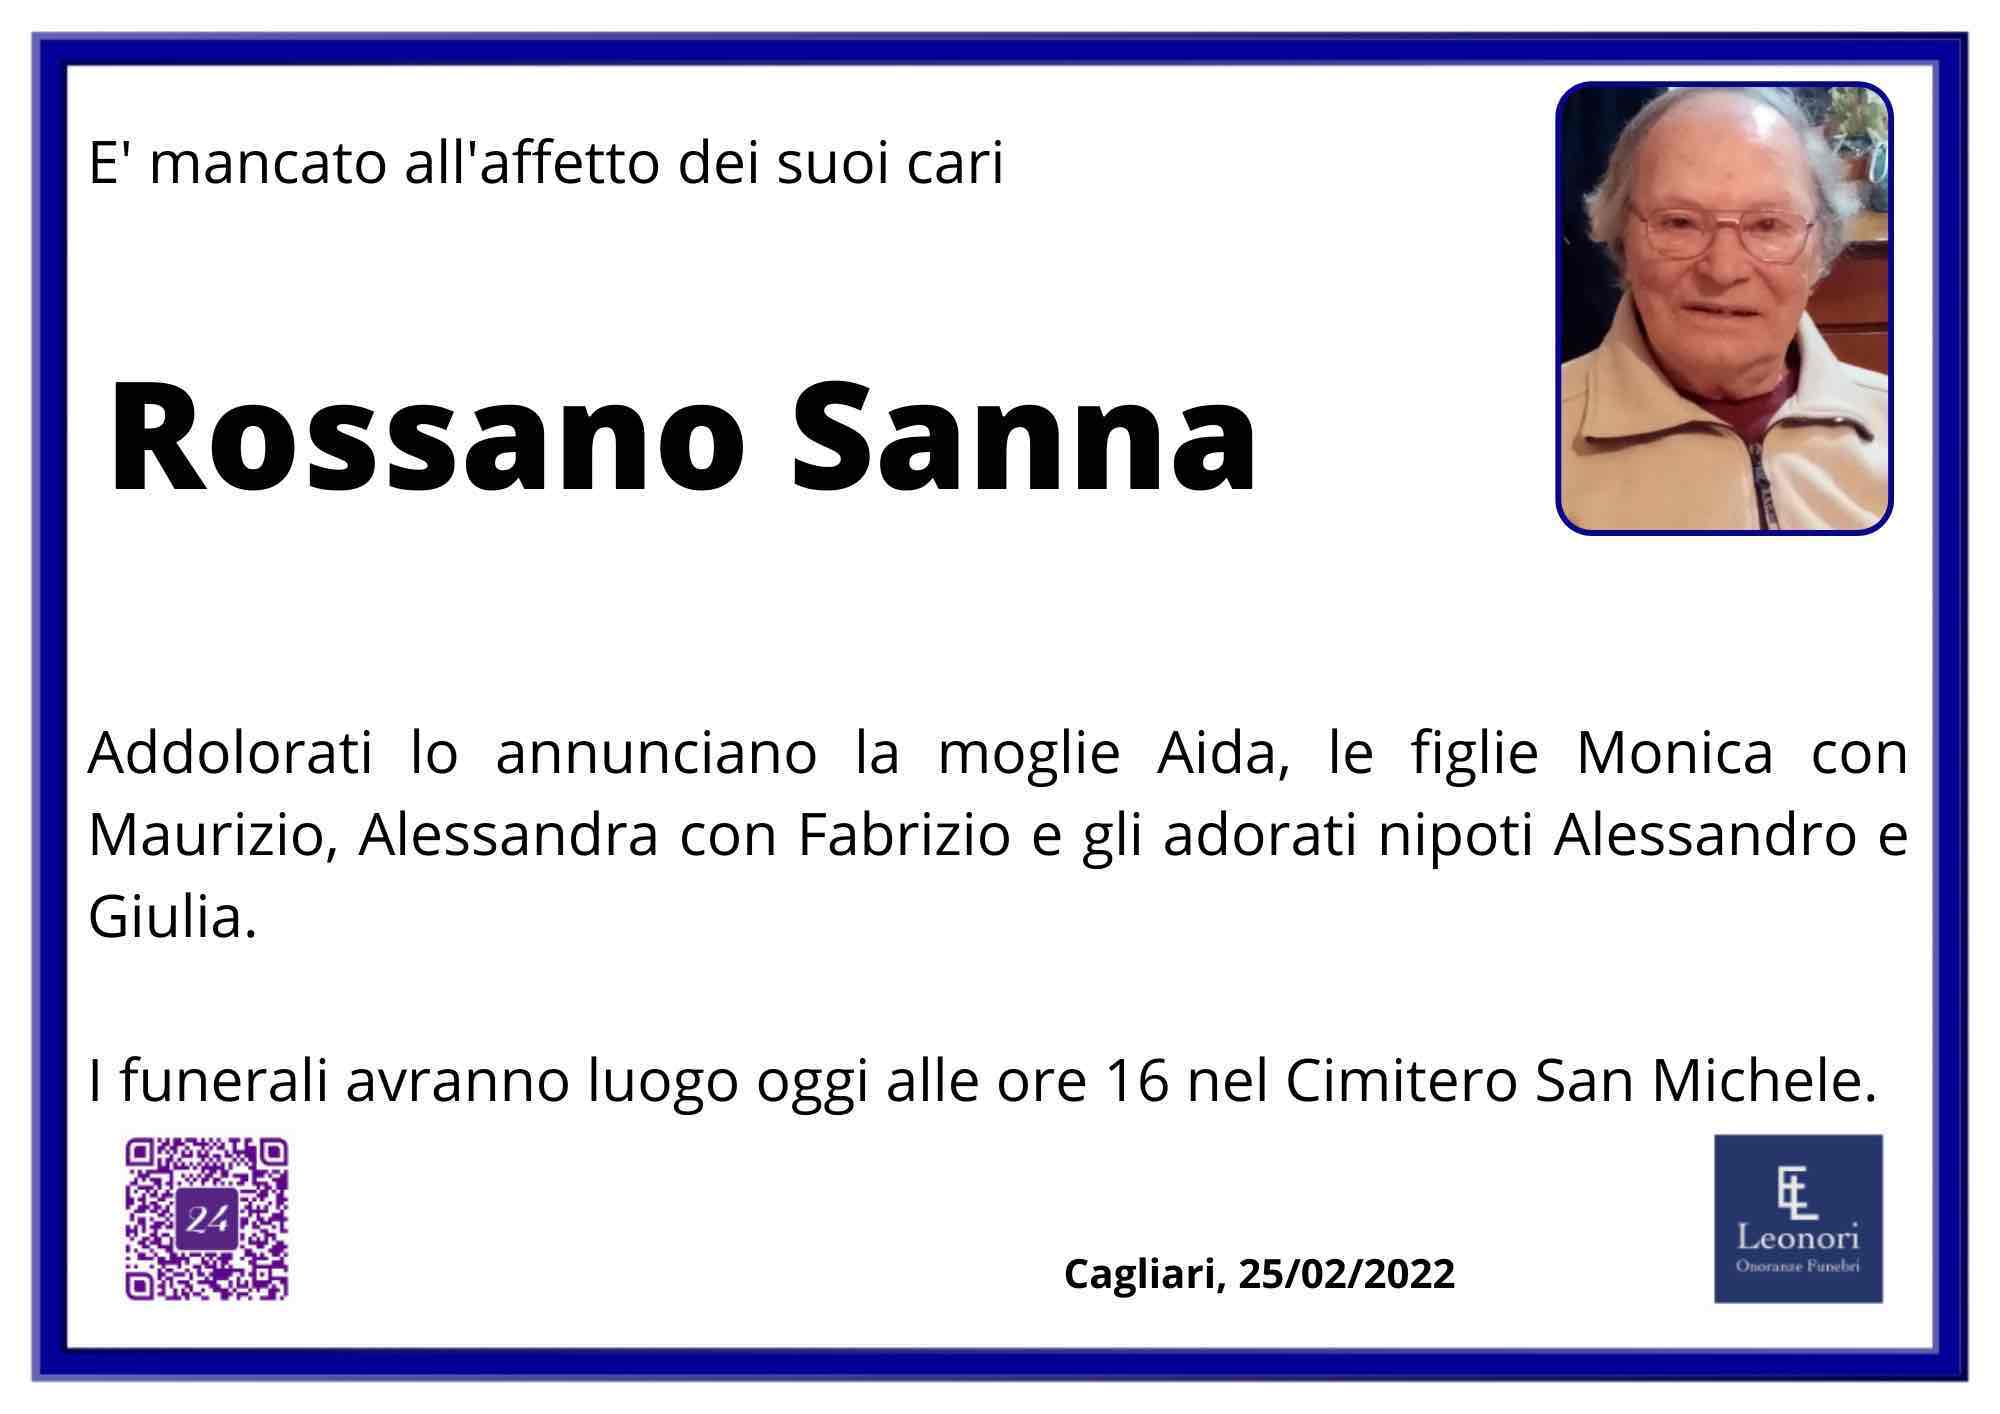 Rossano Sanna